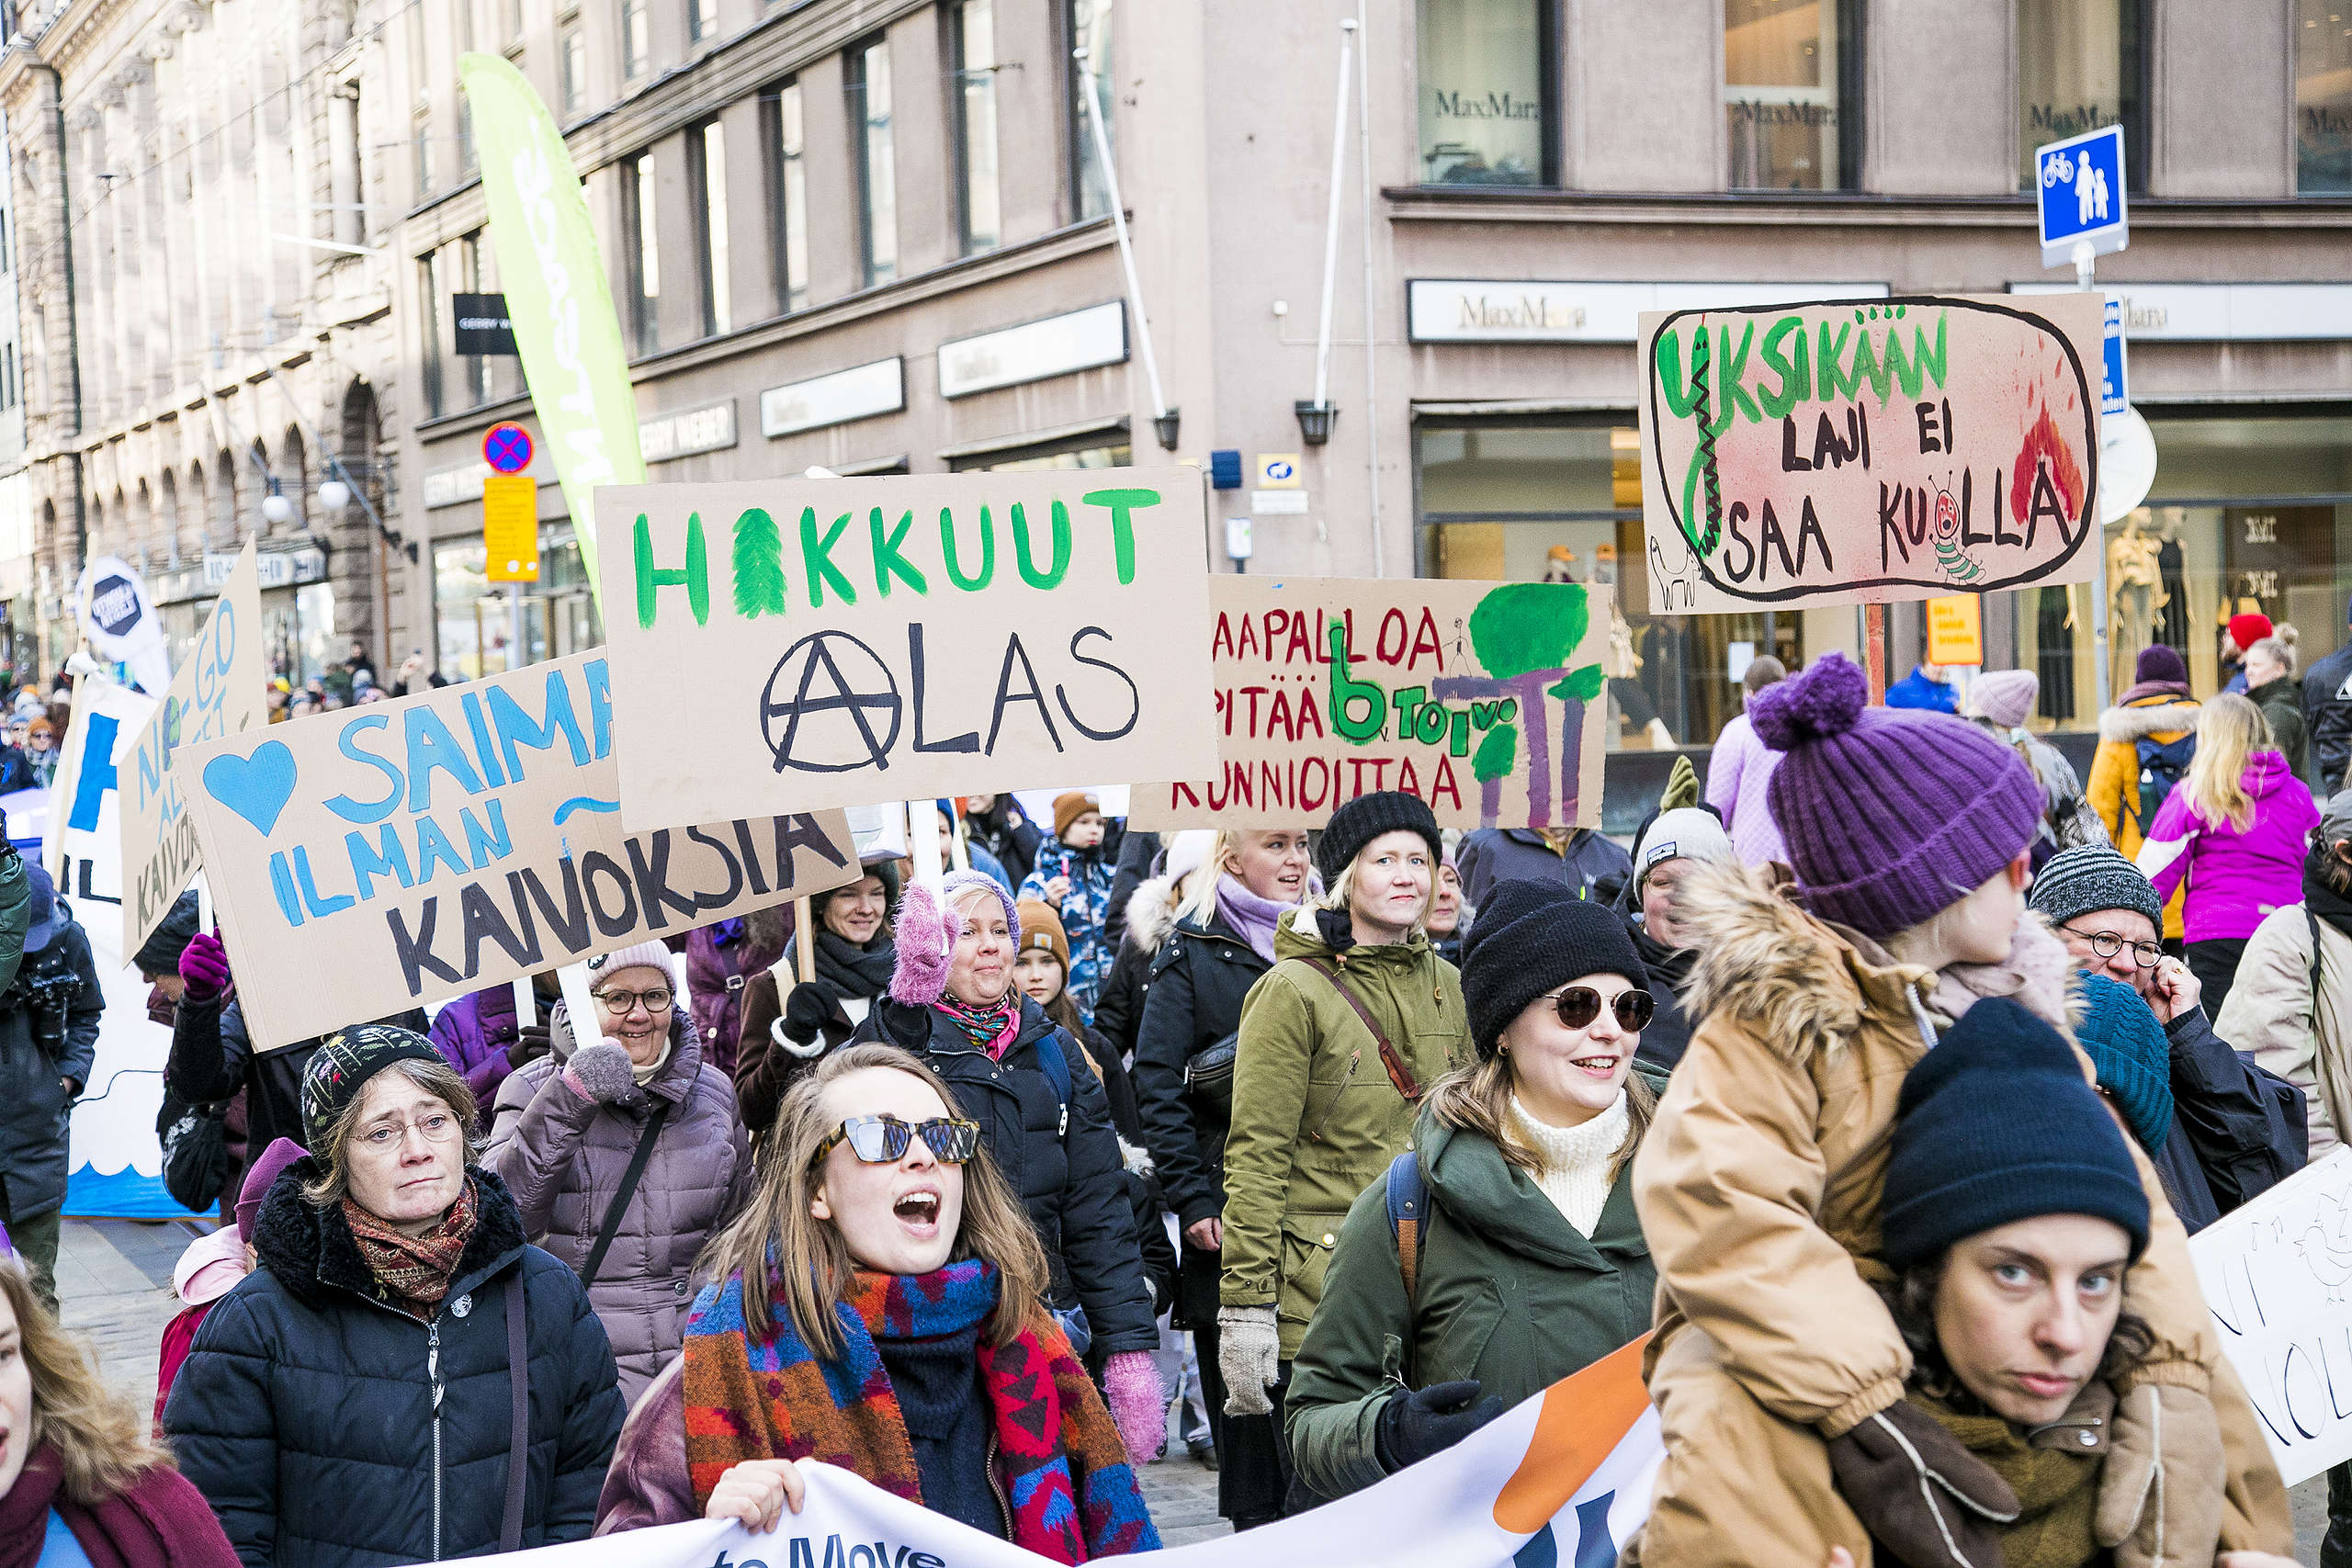 Mielenosoittajia luontomarssilla Aleksanterinkadulla. Mielenosoittajien kylteissä on terveisiä vaalivoittajille.